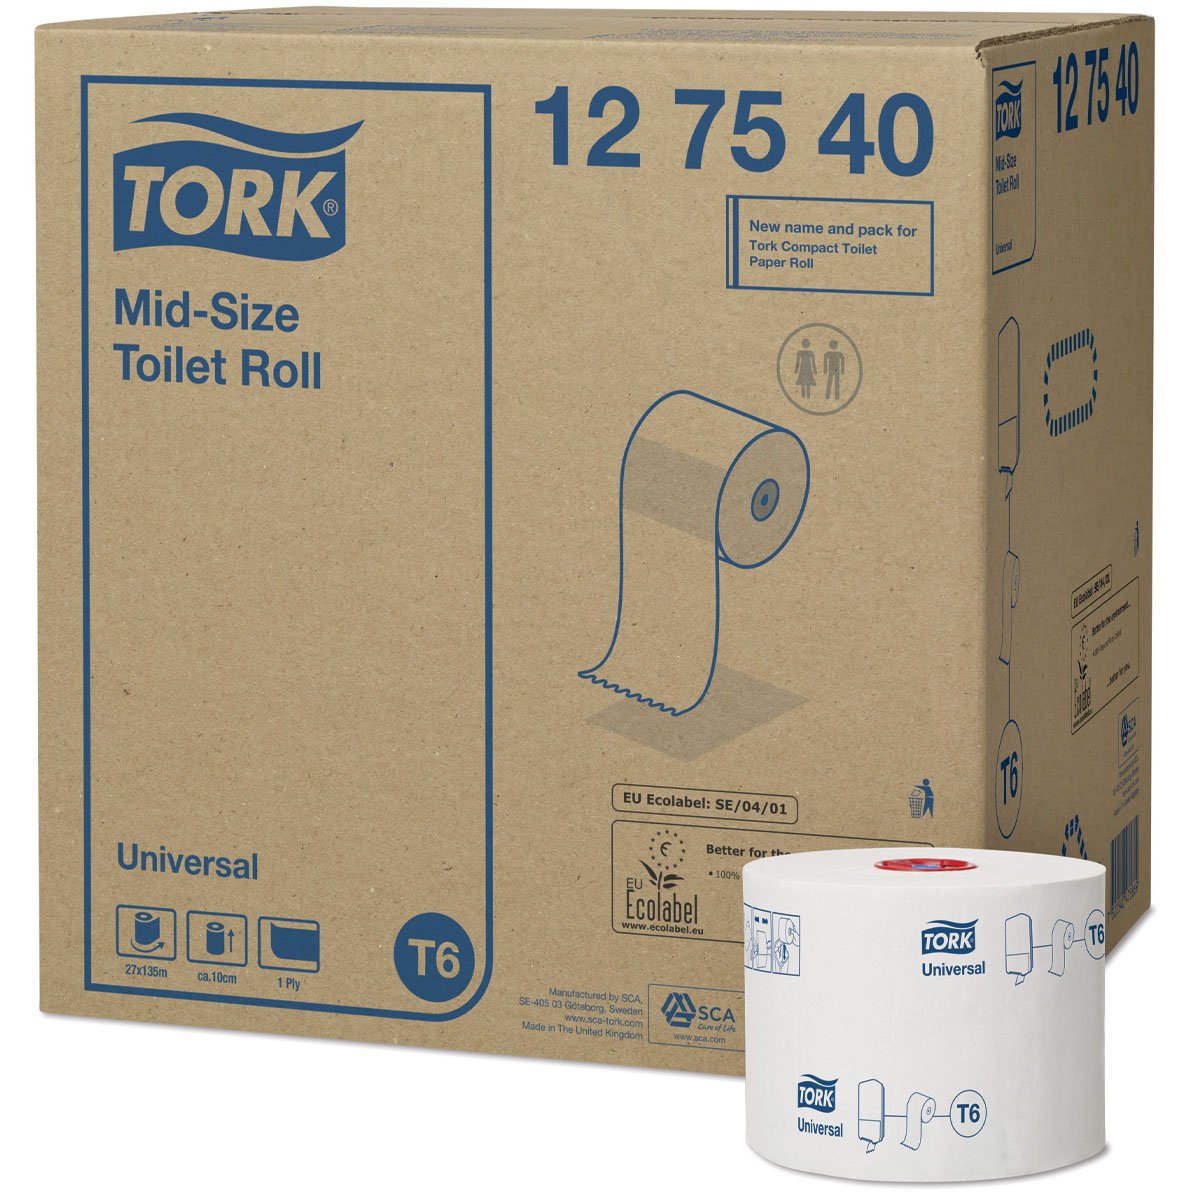 Tork Toiletpapir Universal hvid 1Lag T6